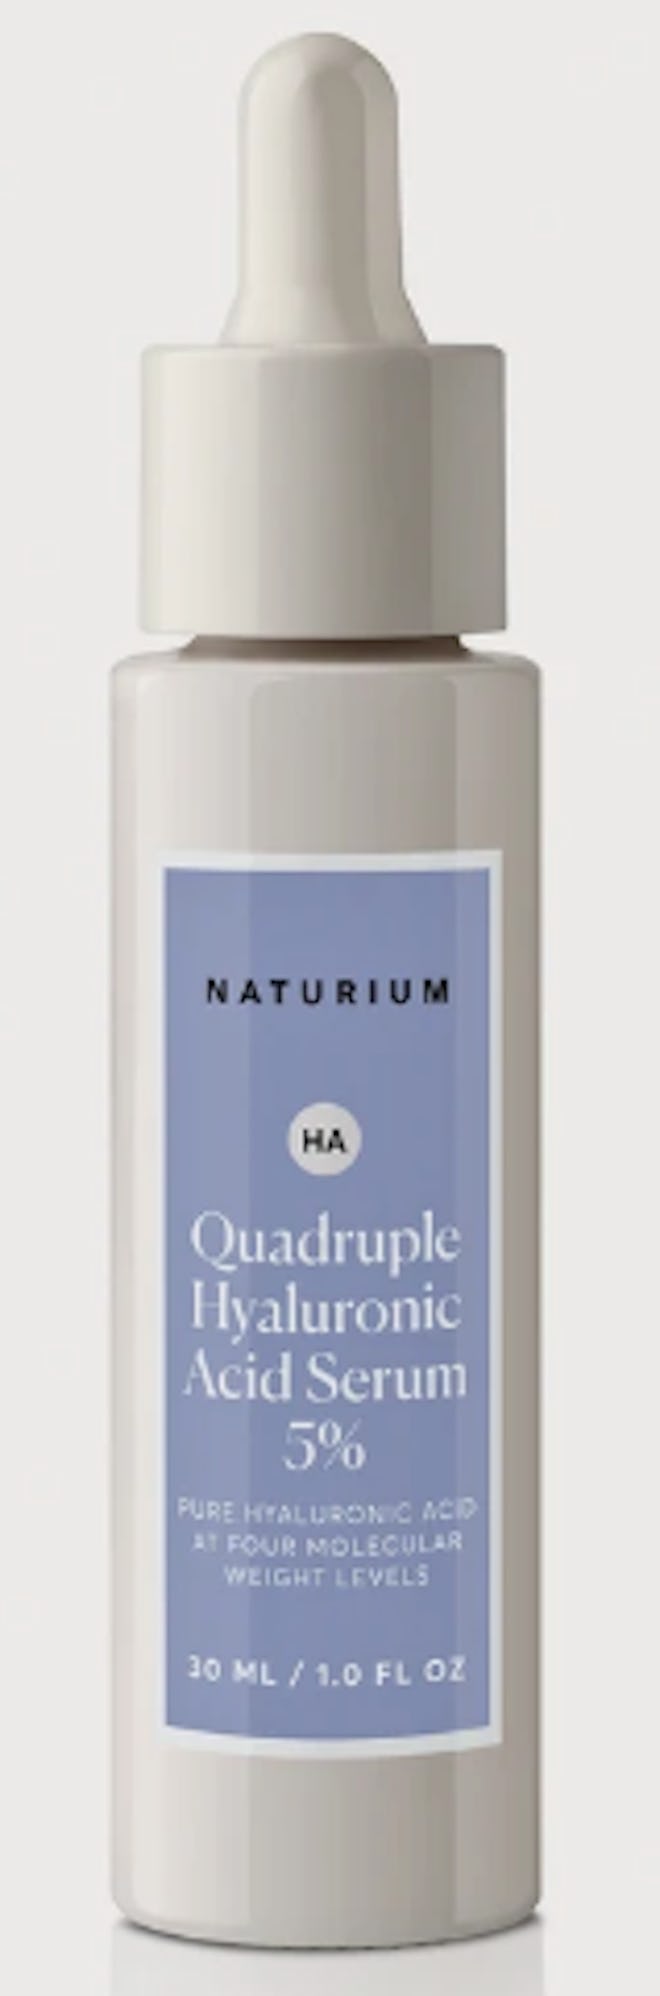 Naturium Quadruple Hyaluronic Acid Serum 5%